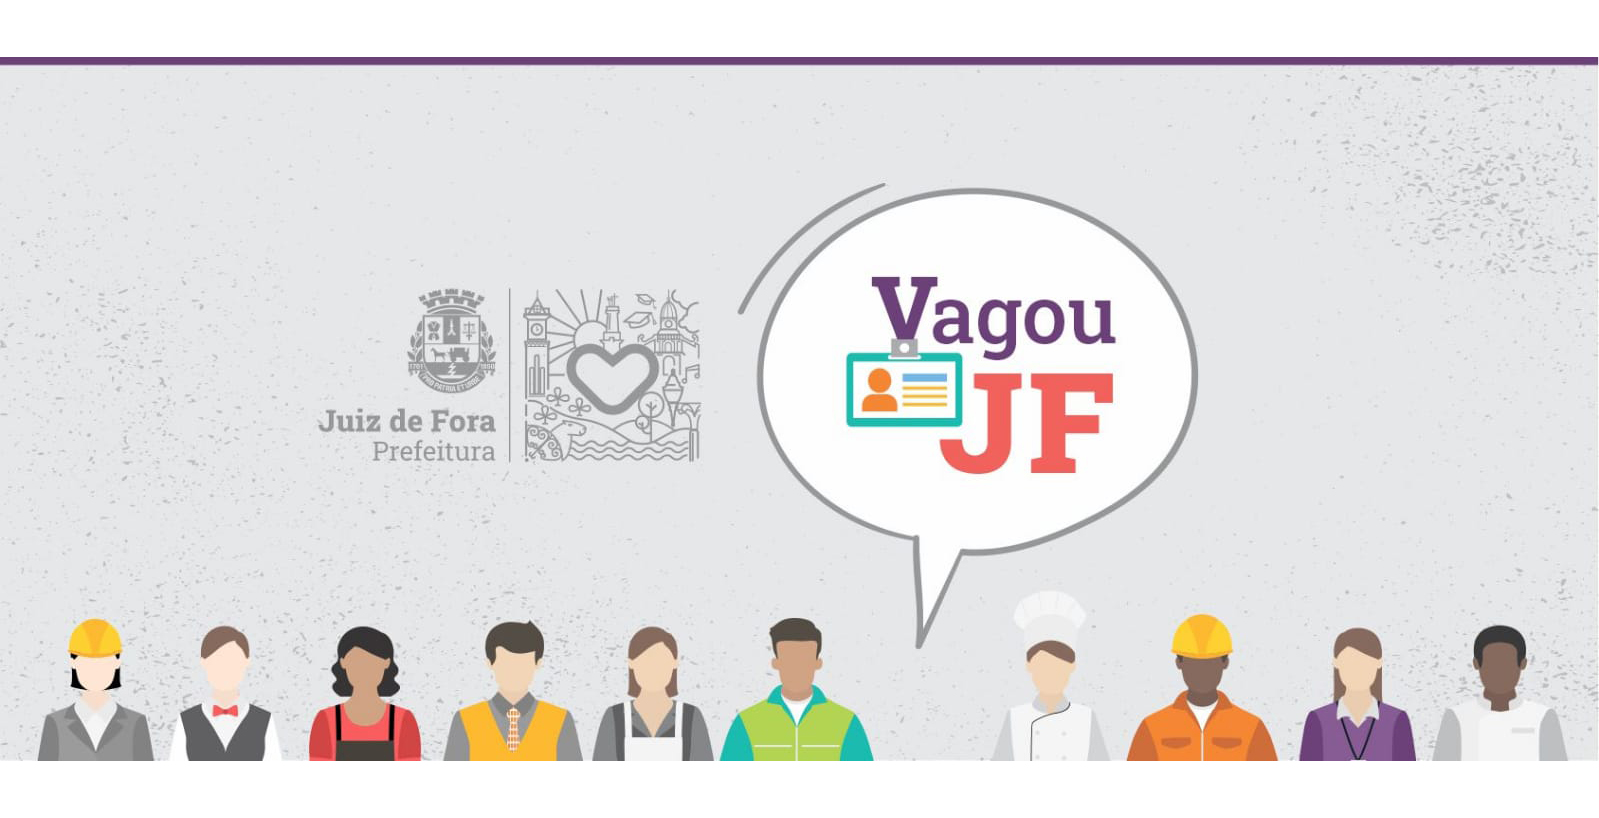 Portal de Notcias PJF | Vagou JF da PJF tem vagas abertas para operador de caldeira e outras oportunidades | SEDIC - 6/10/2022